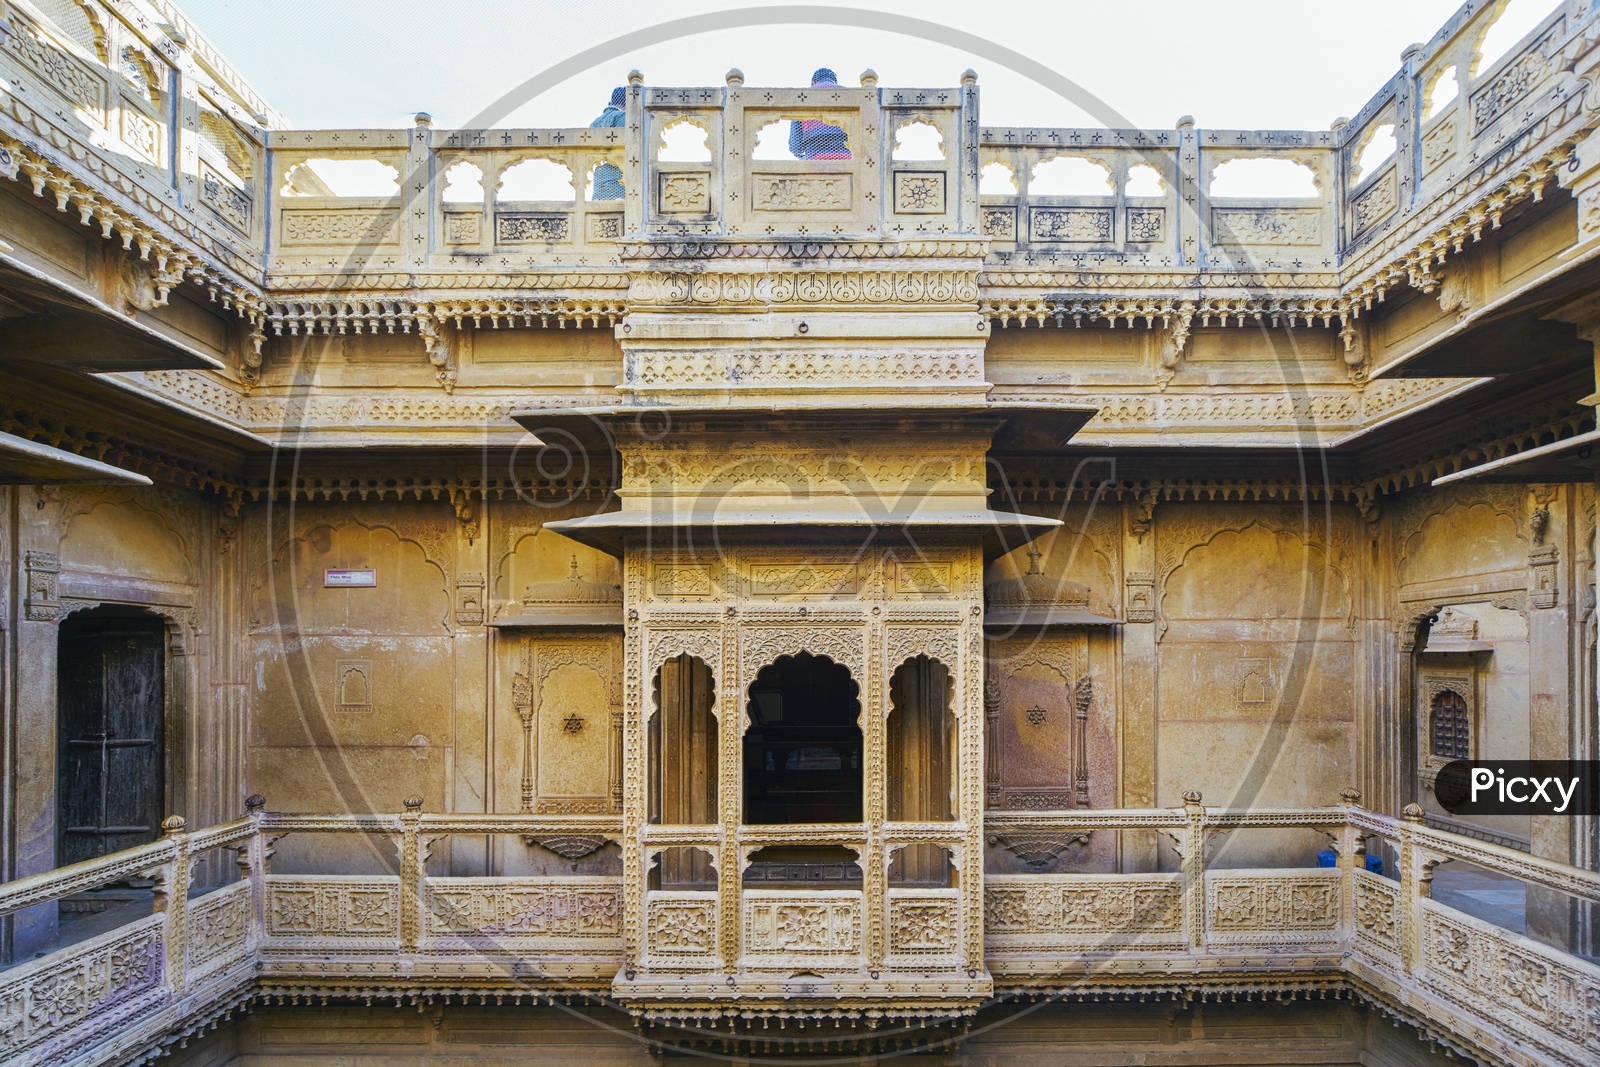 Patwon Ki Haveli, Jaisalmer